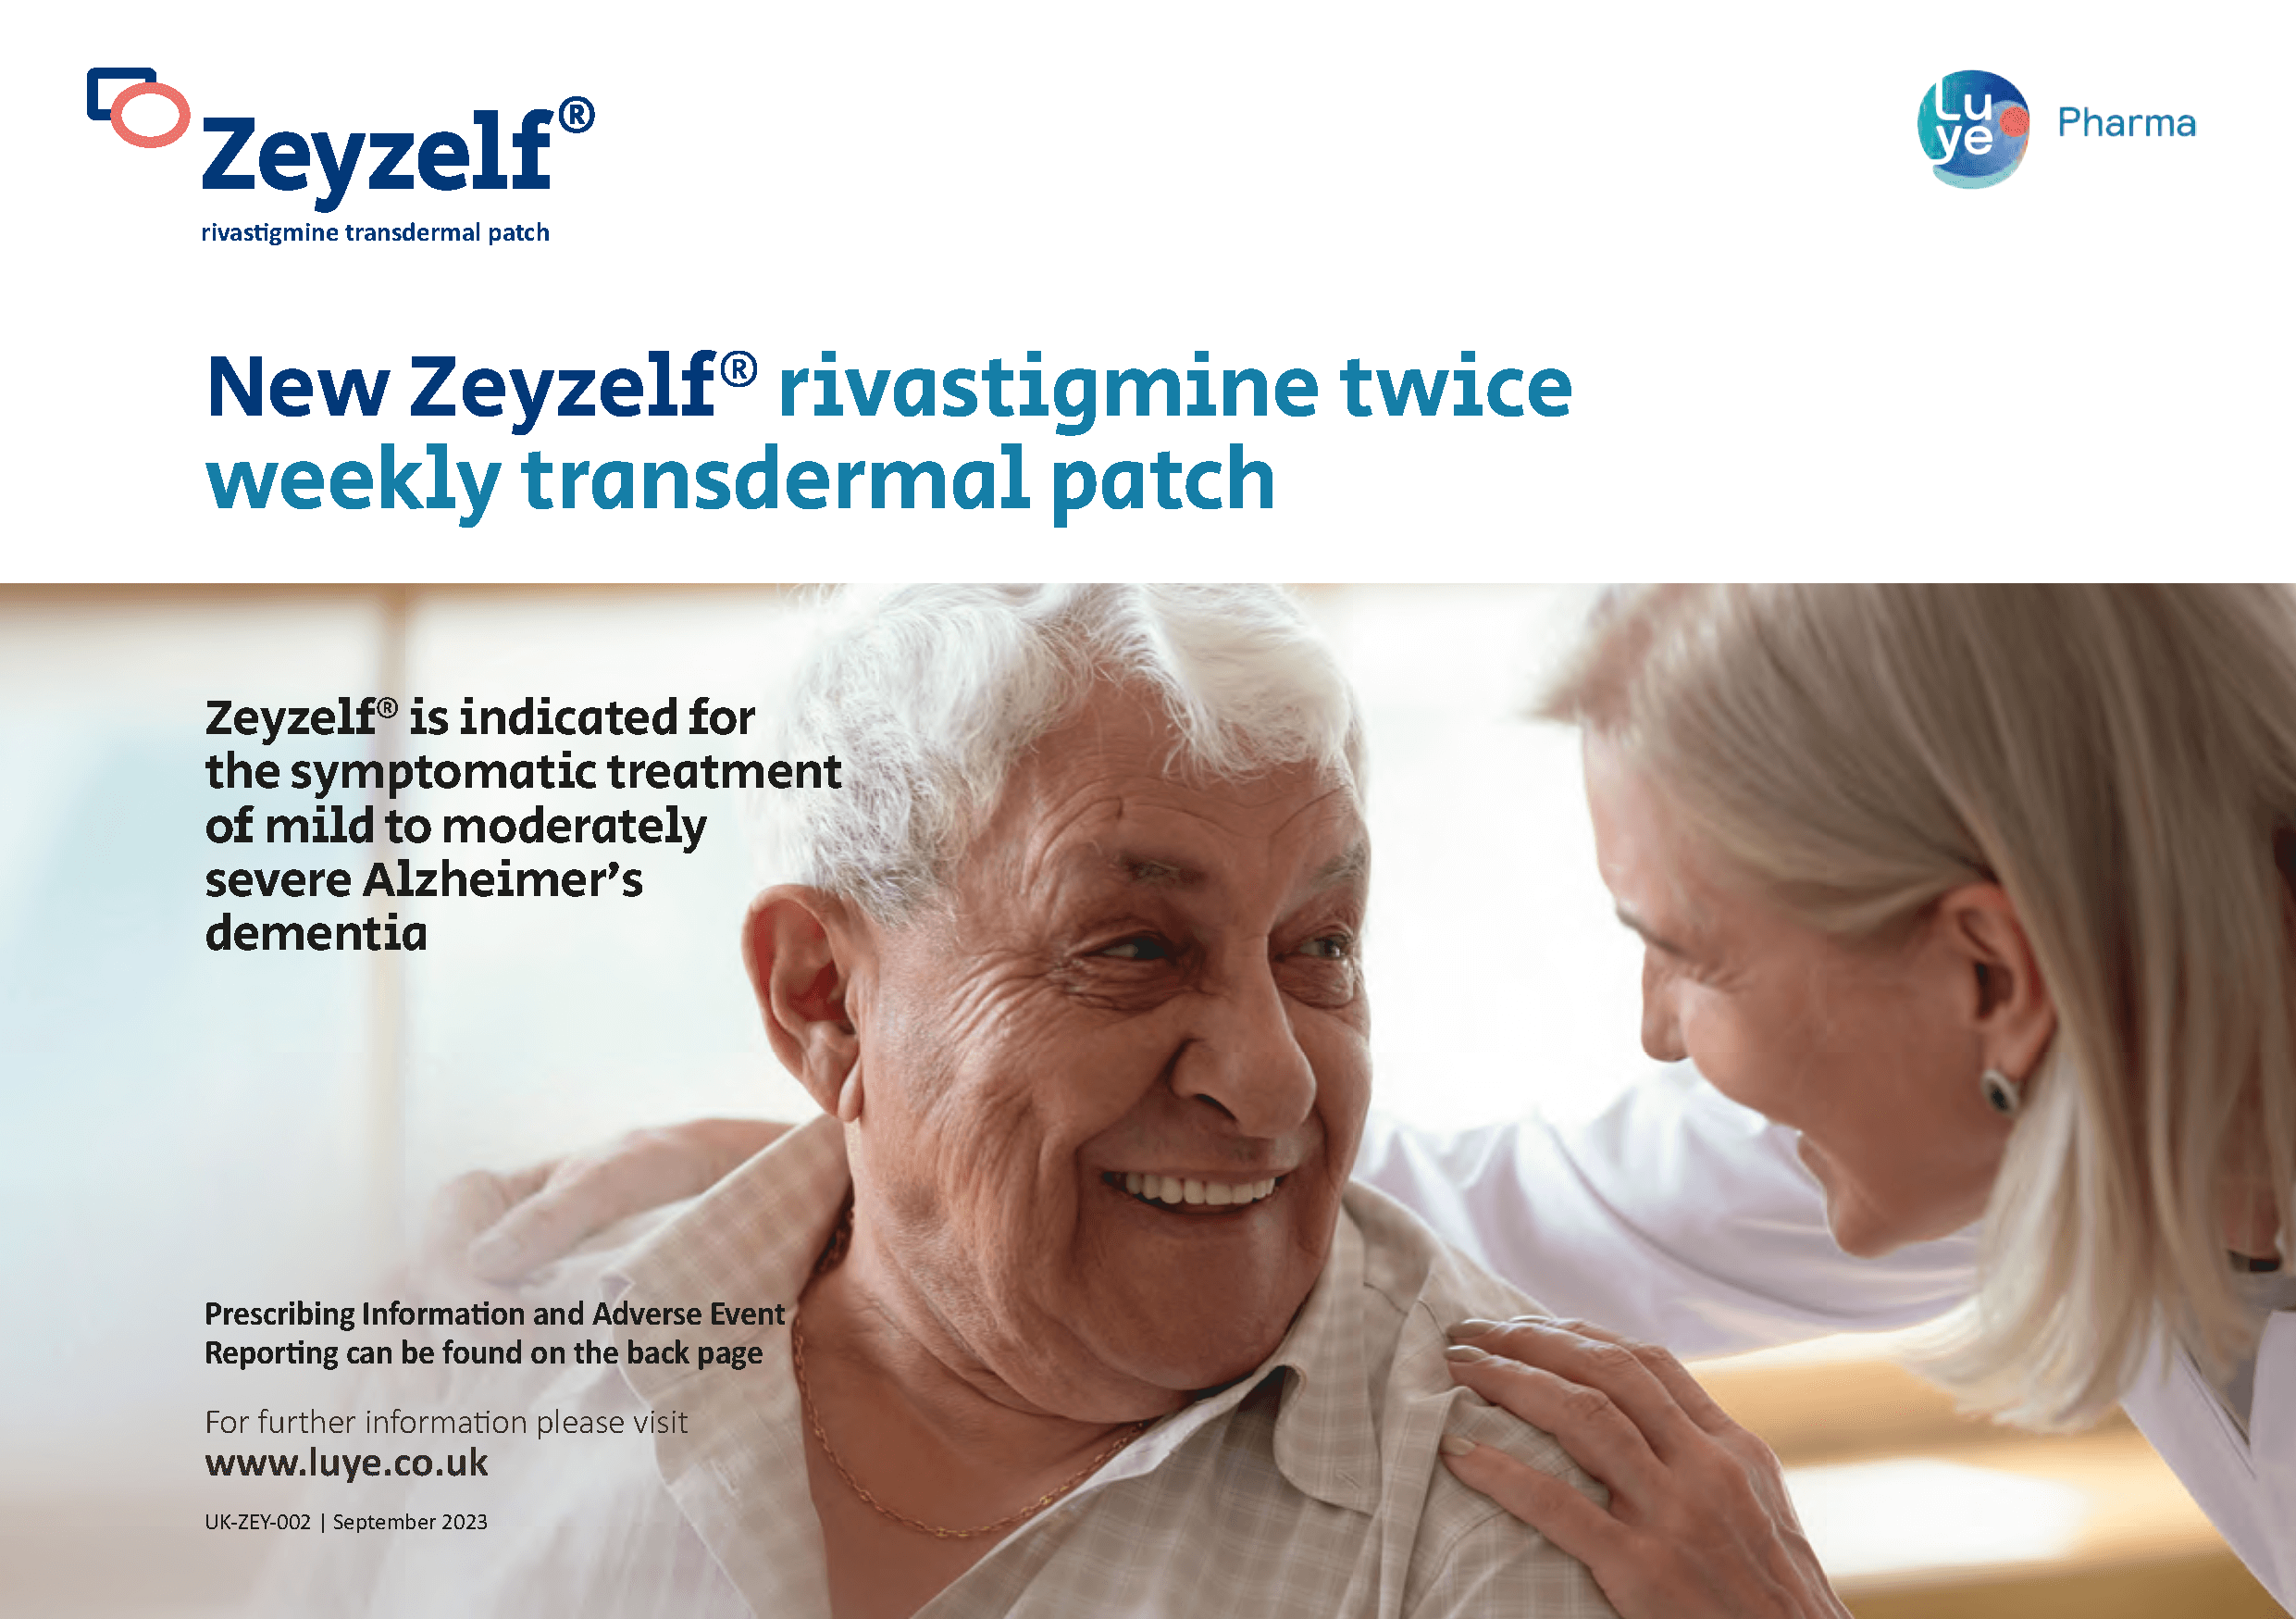 New Zeyzelf® rivastigmine twice weekly transdermal patch